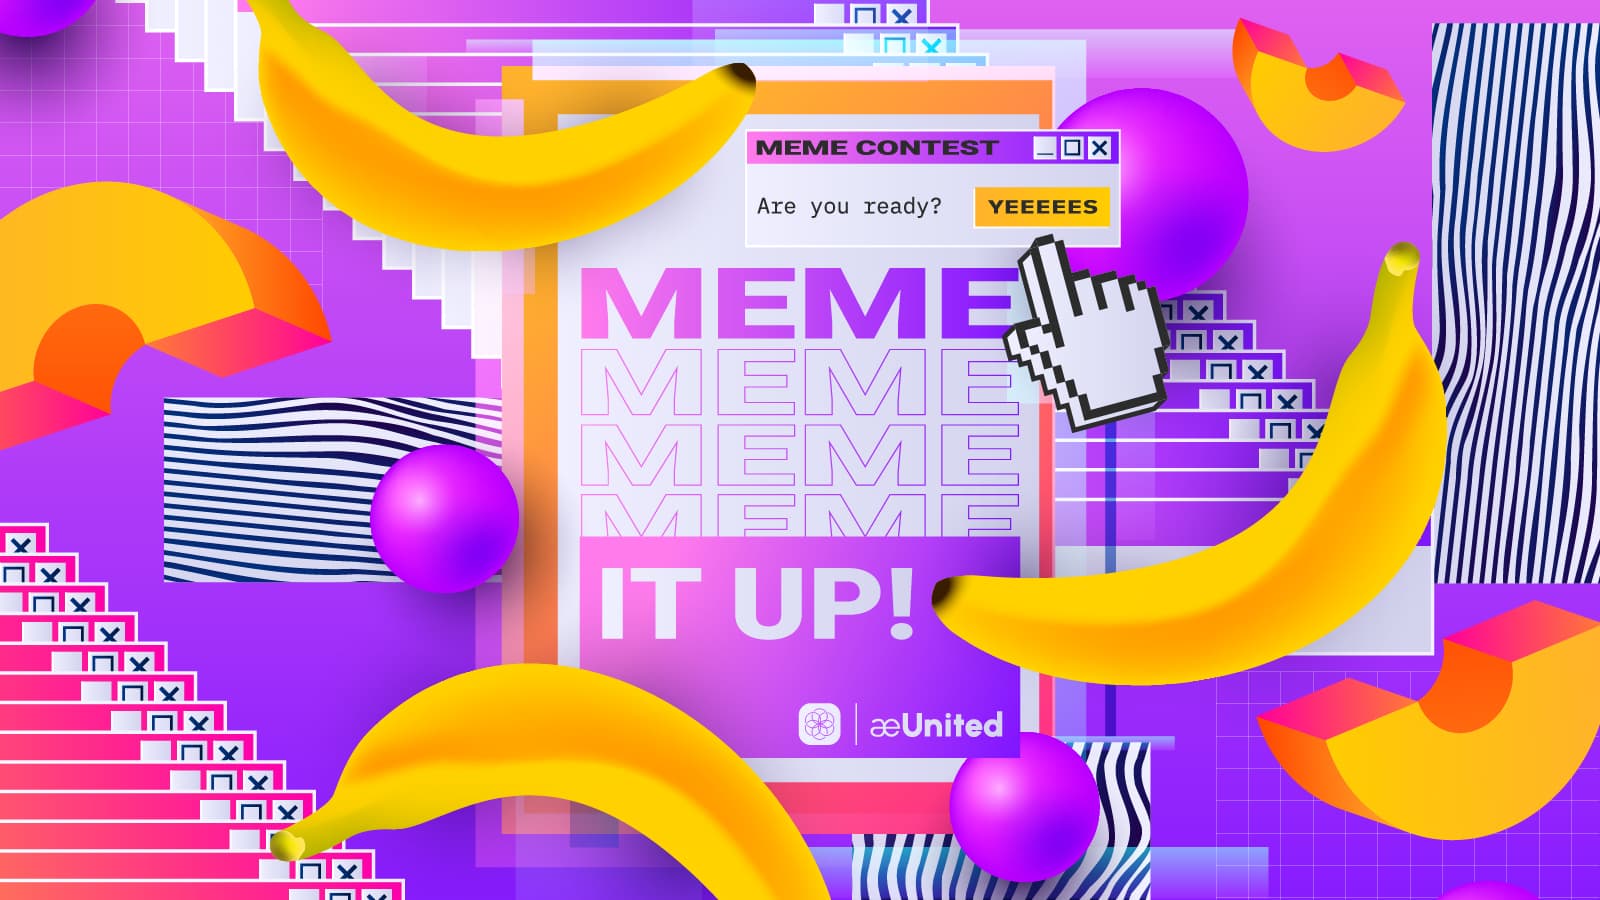 Forum Event - Make a meme Contest